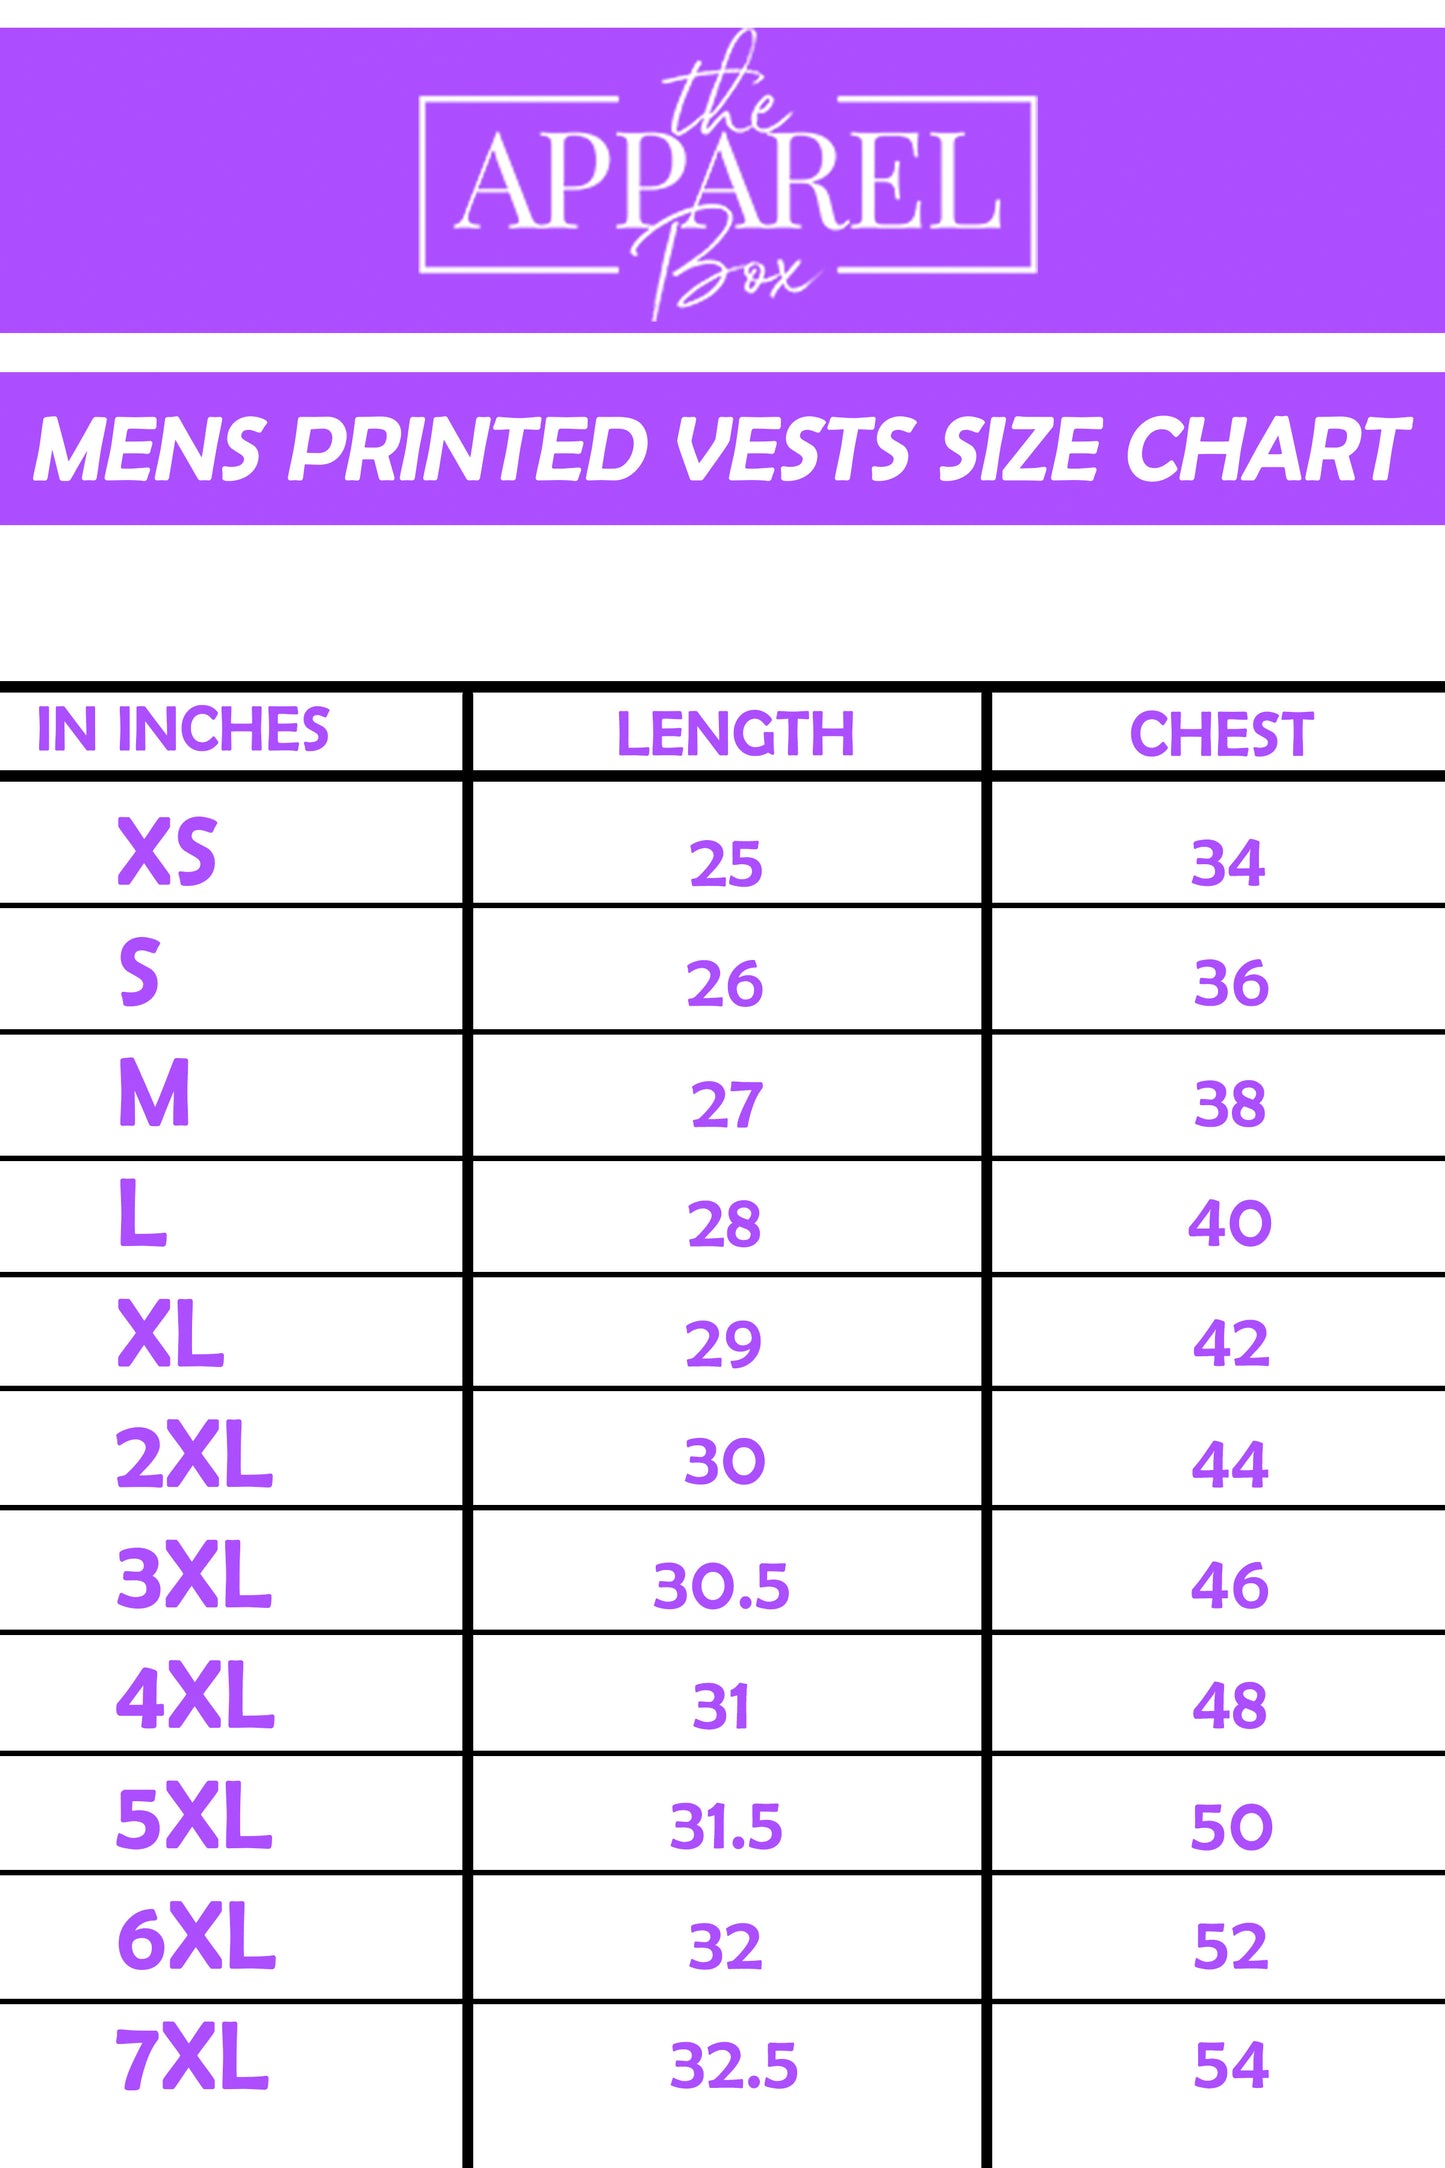 Printed Vest#34